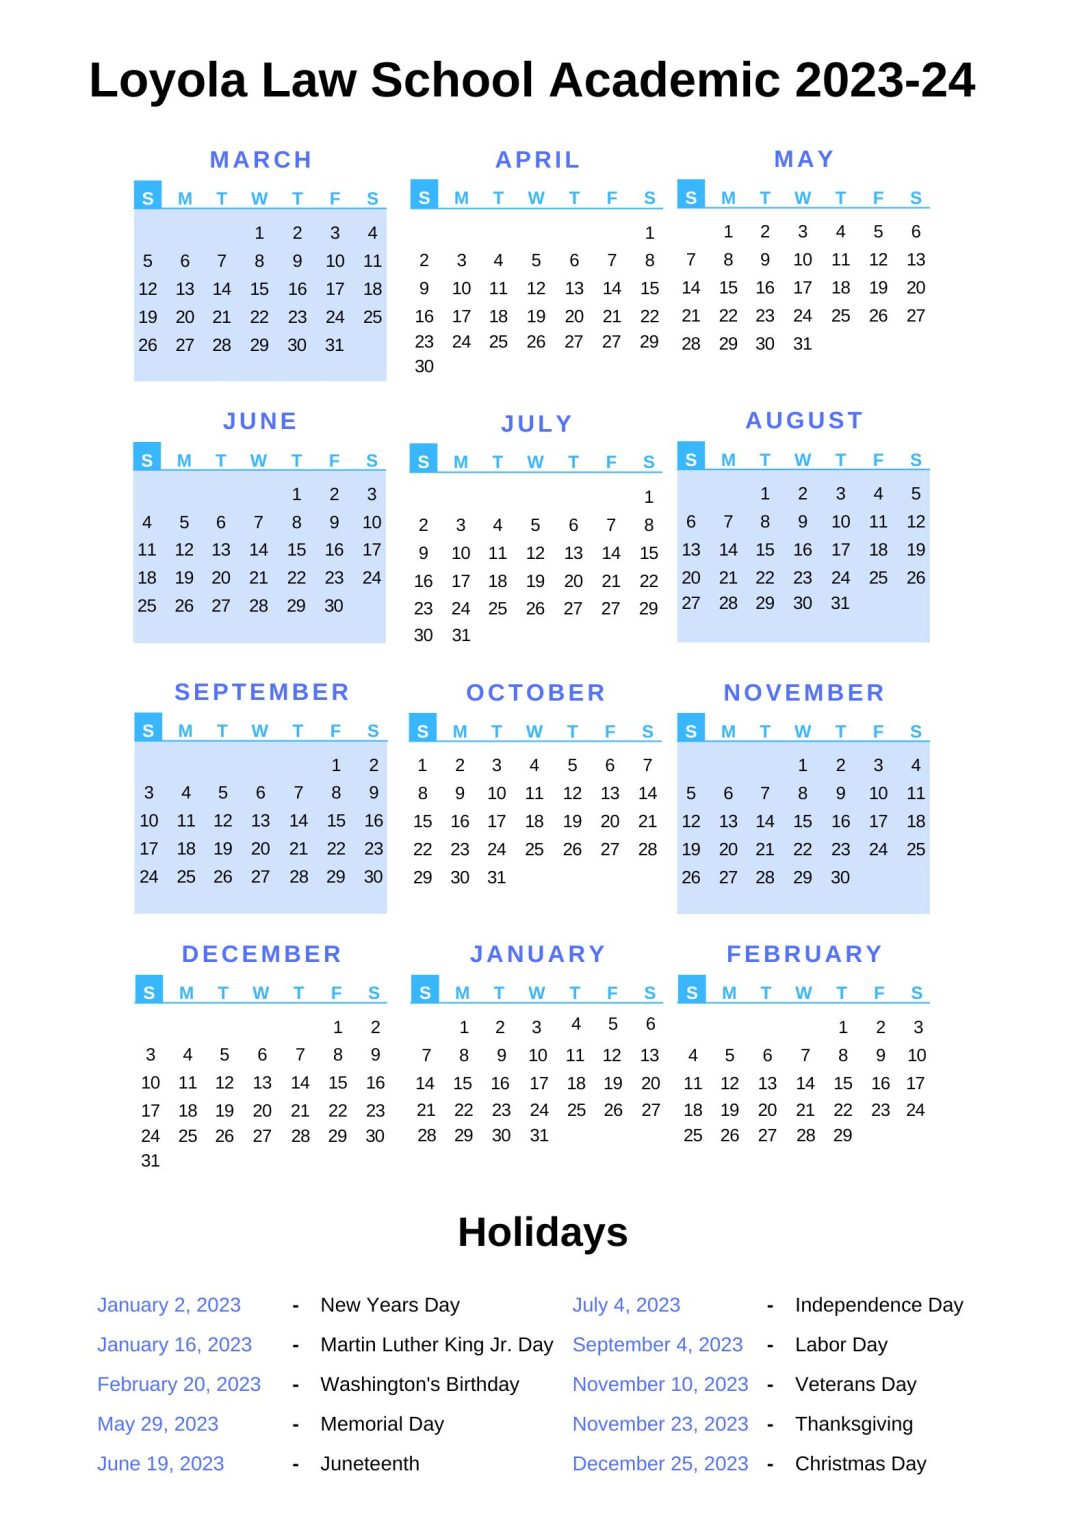 Loyola Law School Academic Calendar 2023 24 With Holidays